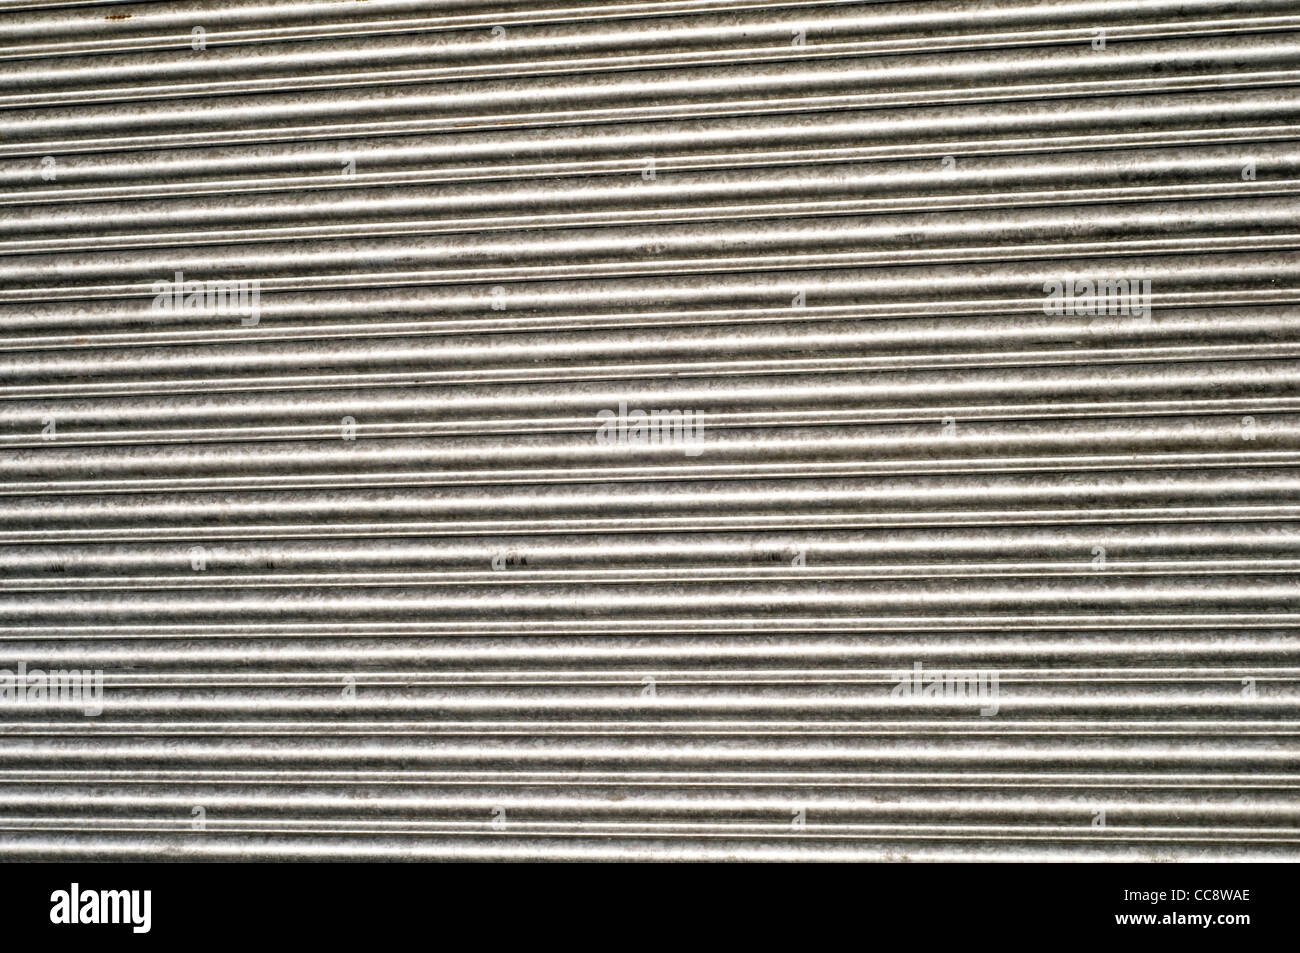 Detalle de persianas de metal cerrados en un escaparate en el Reino Unido, destacando el impacto de la recesión y la crisis económica Foto de stock